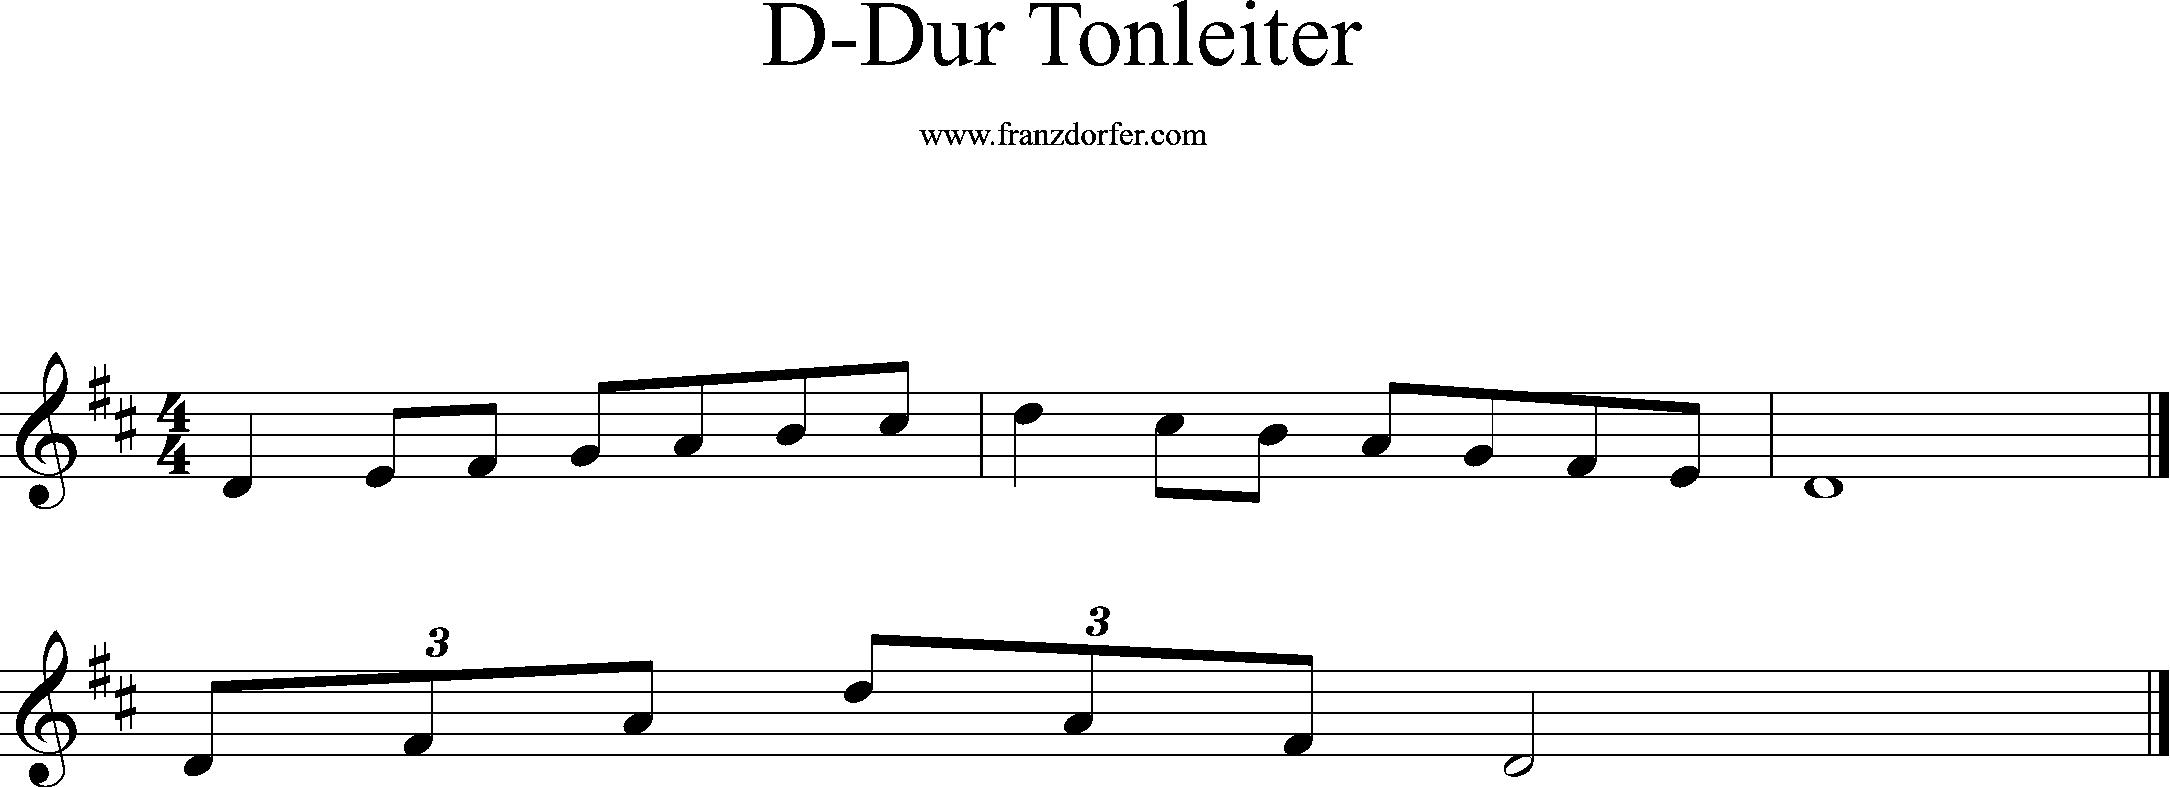 d-dur tonleiter, treble clef, d1-d2